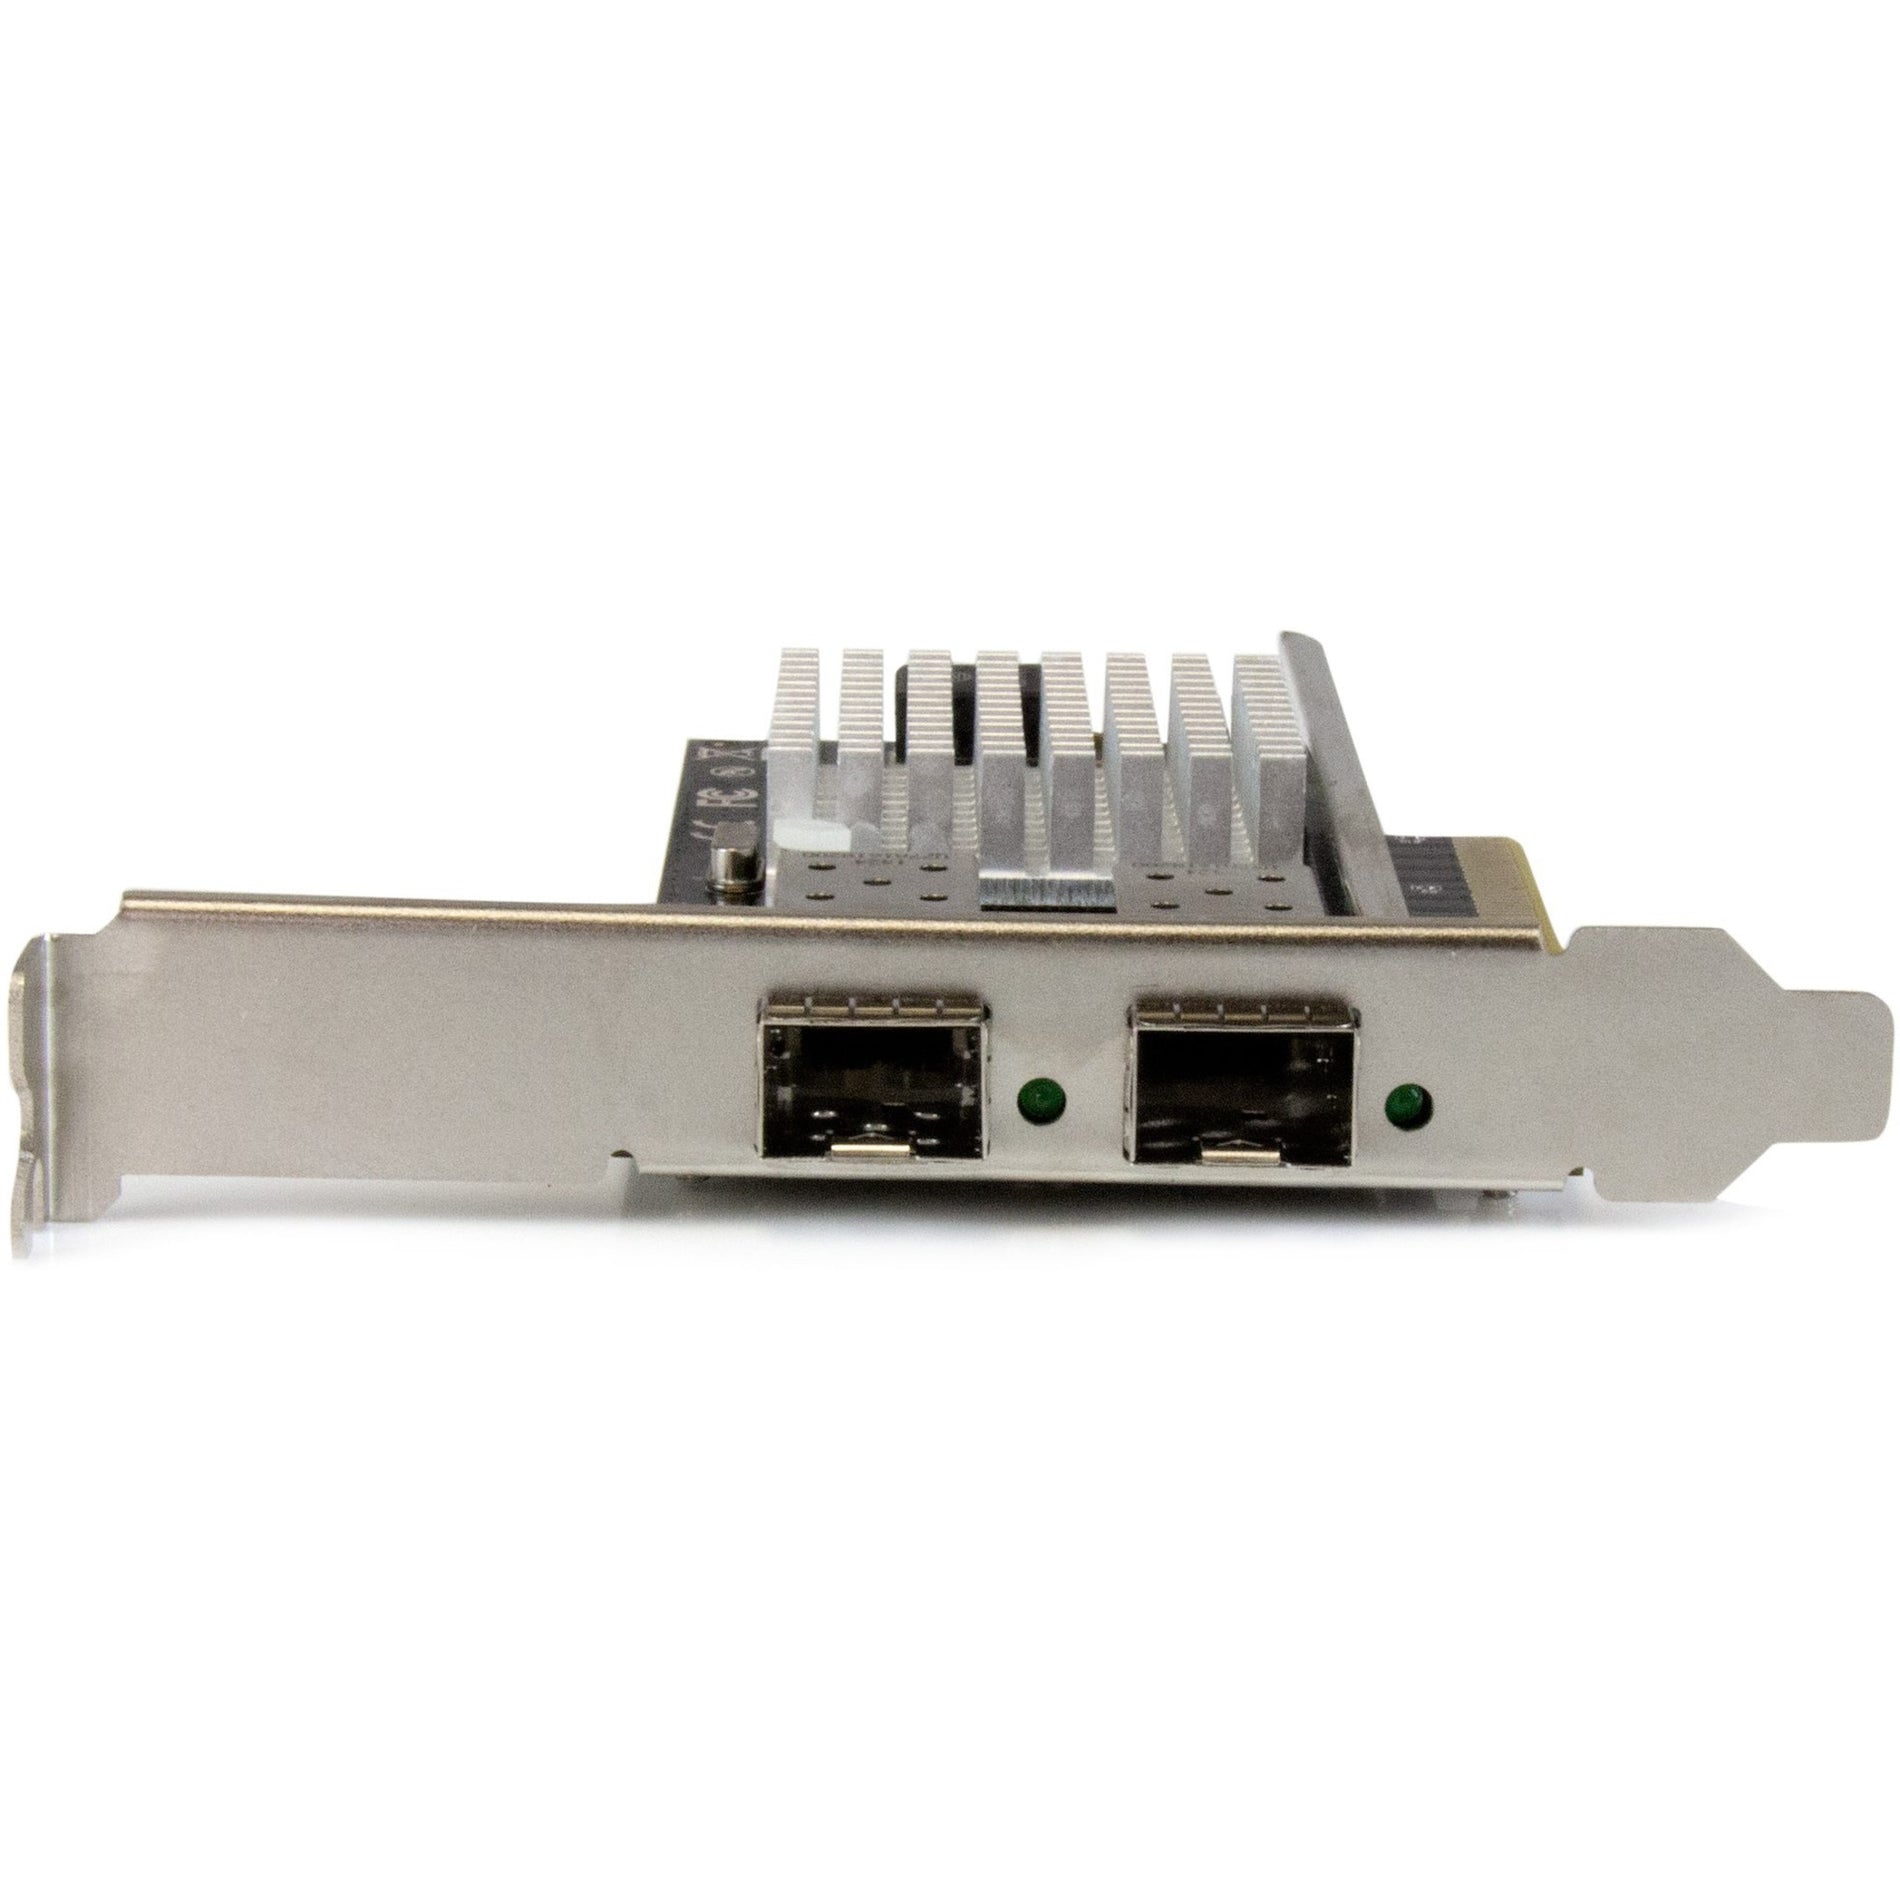 StarTech.com - ستار تك  بطاقة شبكة ليفية 10 جيجا بايت بـ 2 منفذ مع SFP+ - PCIe، رقاقة إنتل، توصيل إيثرنت عالي السرعة